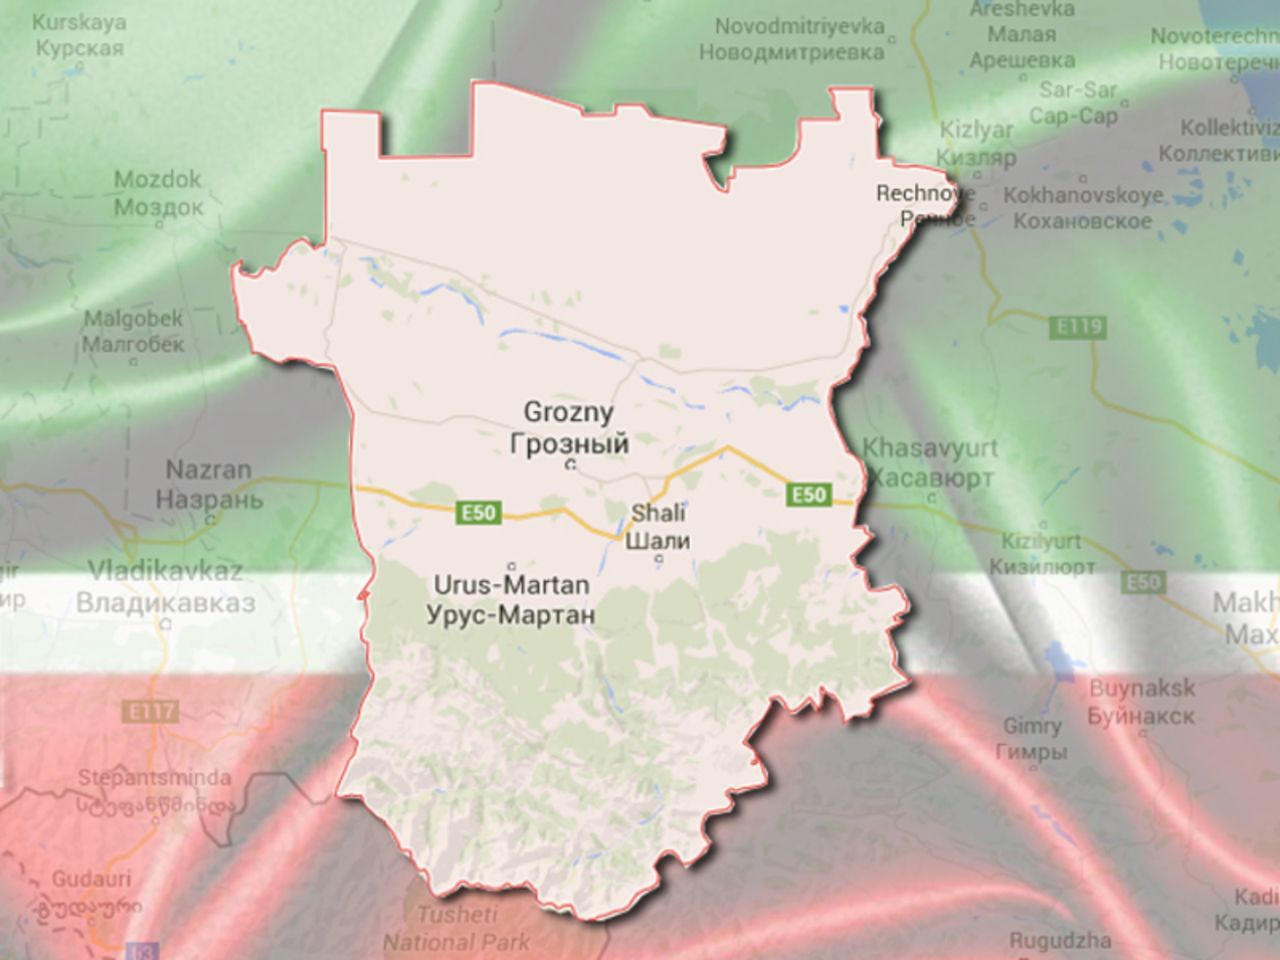 Ичкерия на карте россии